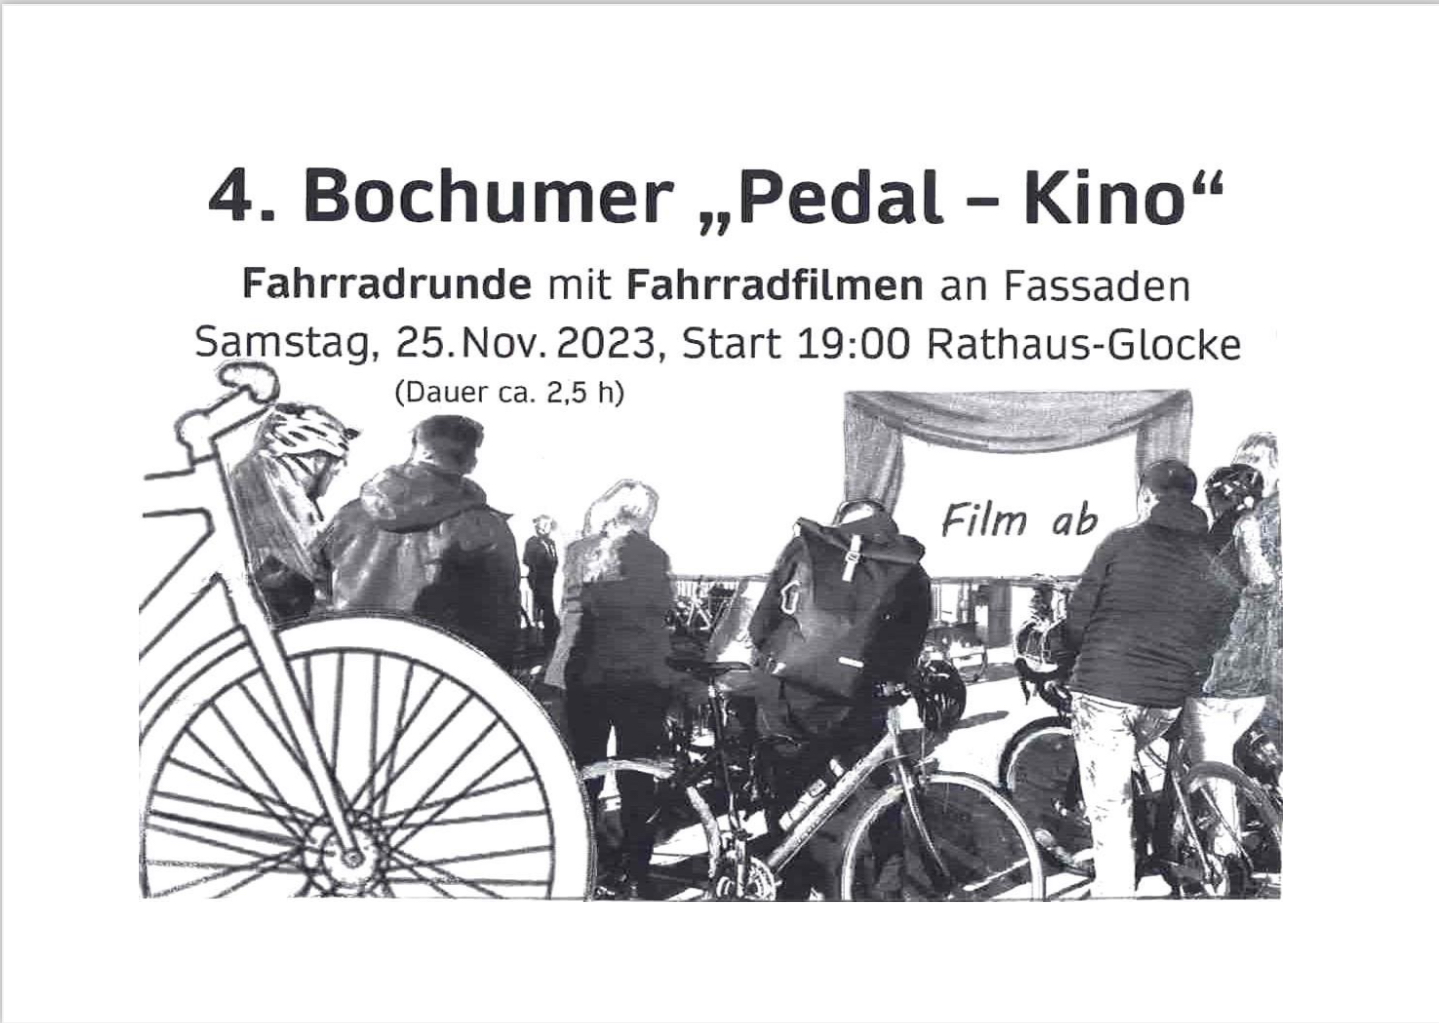 4. Bochumer Pedalkino